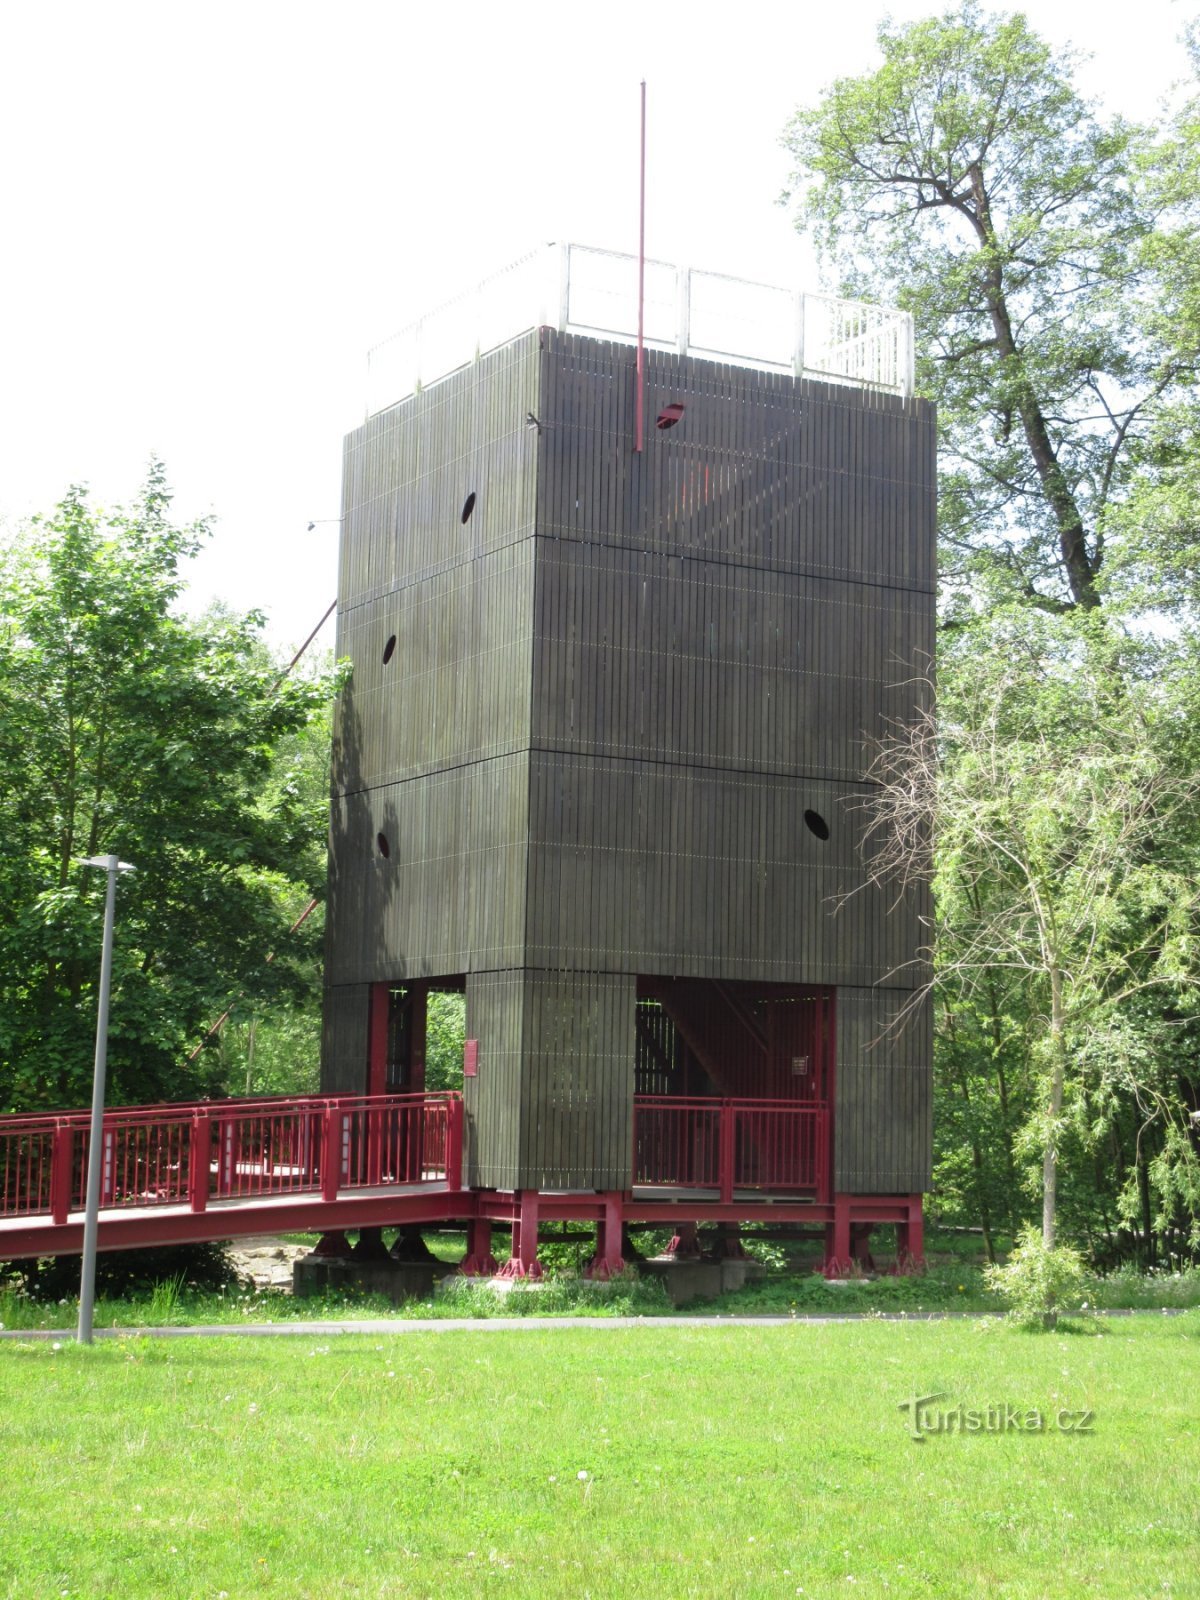 ヘプの橋の見張り塔 - ヴァーヴロヴァ見張り塔